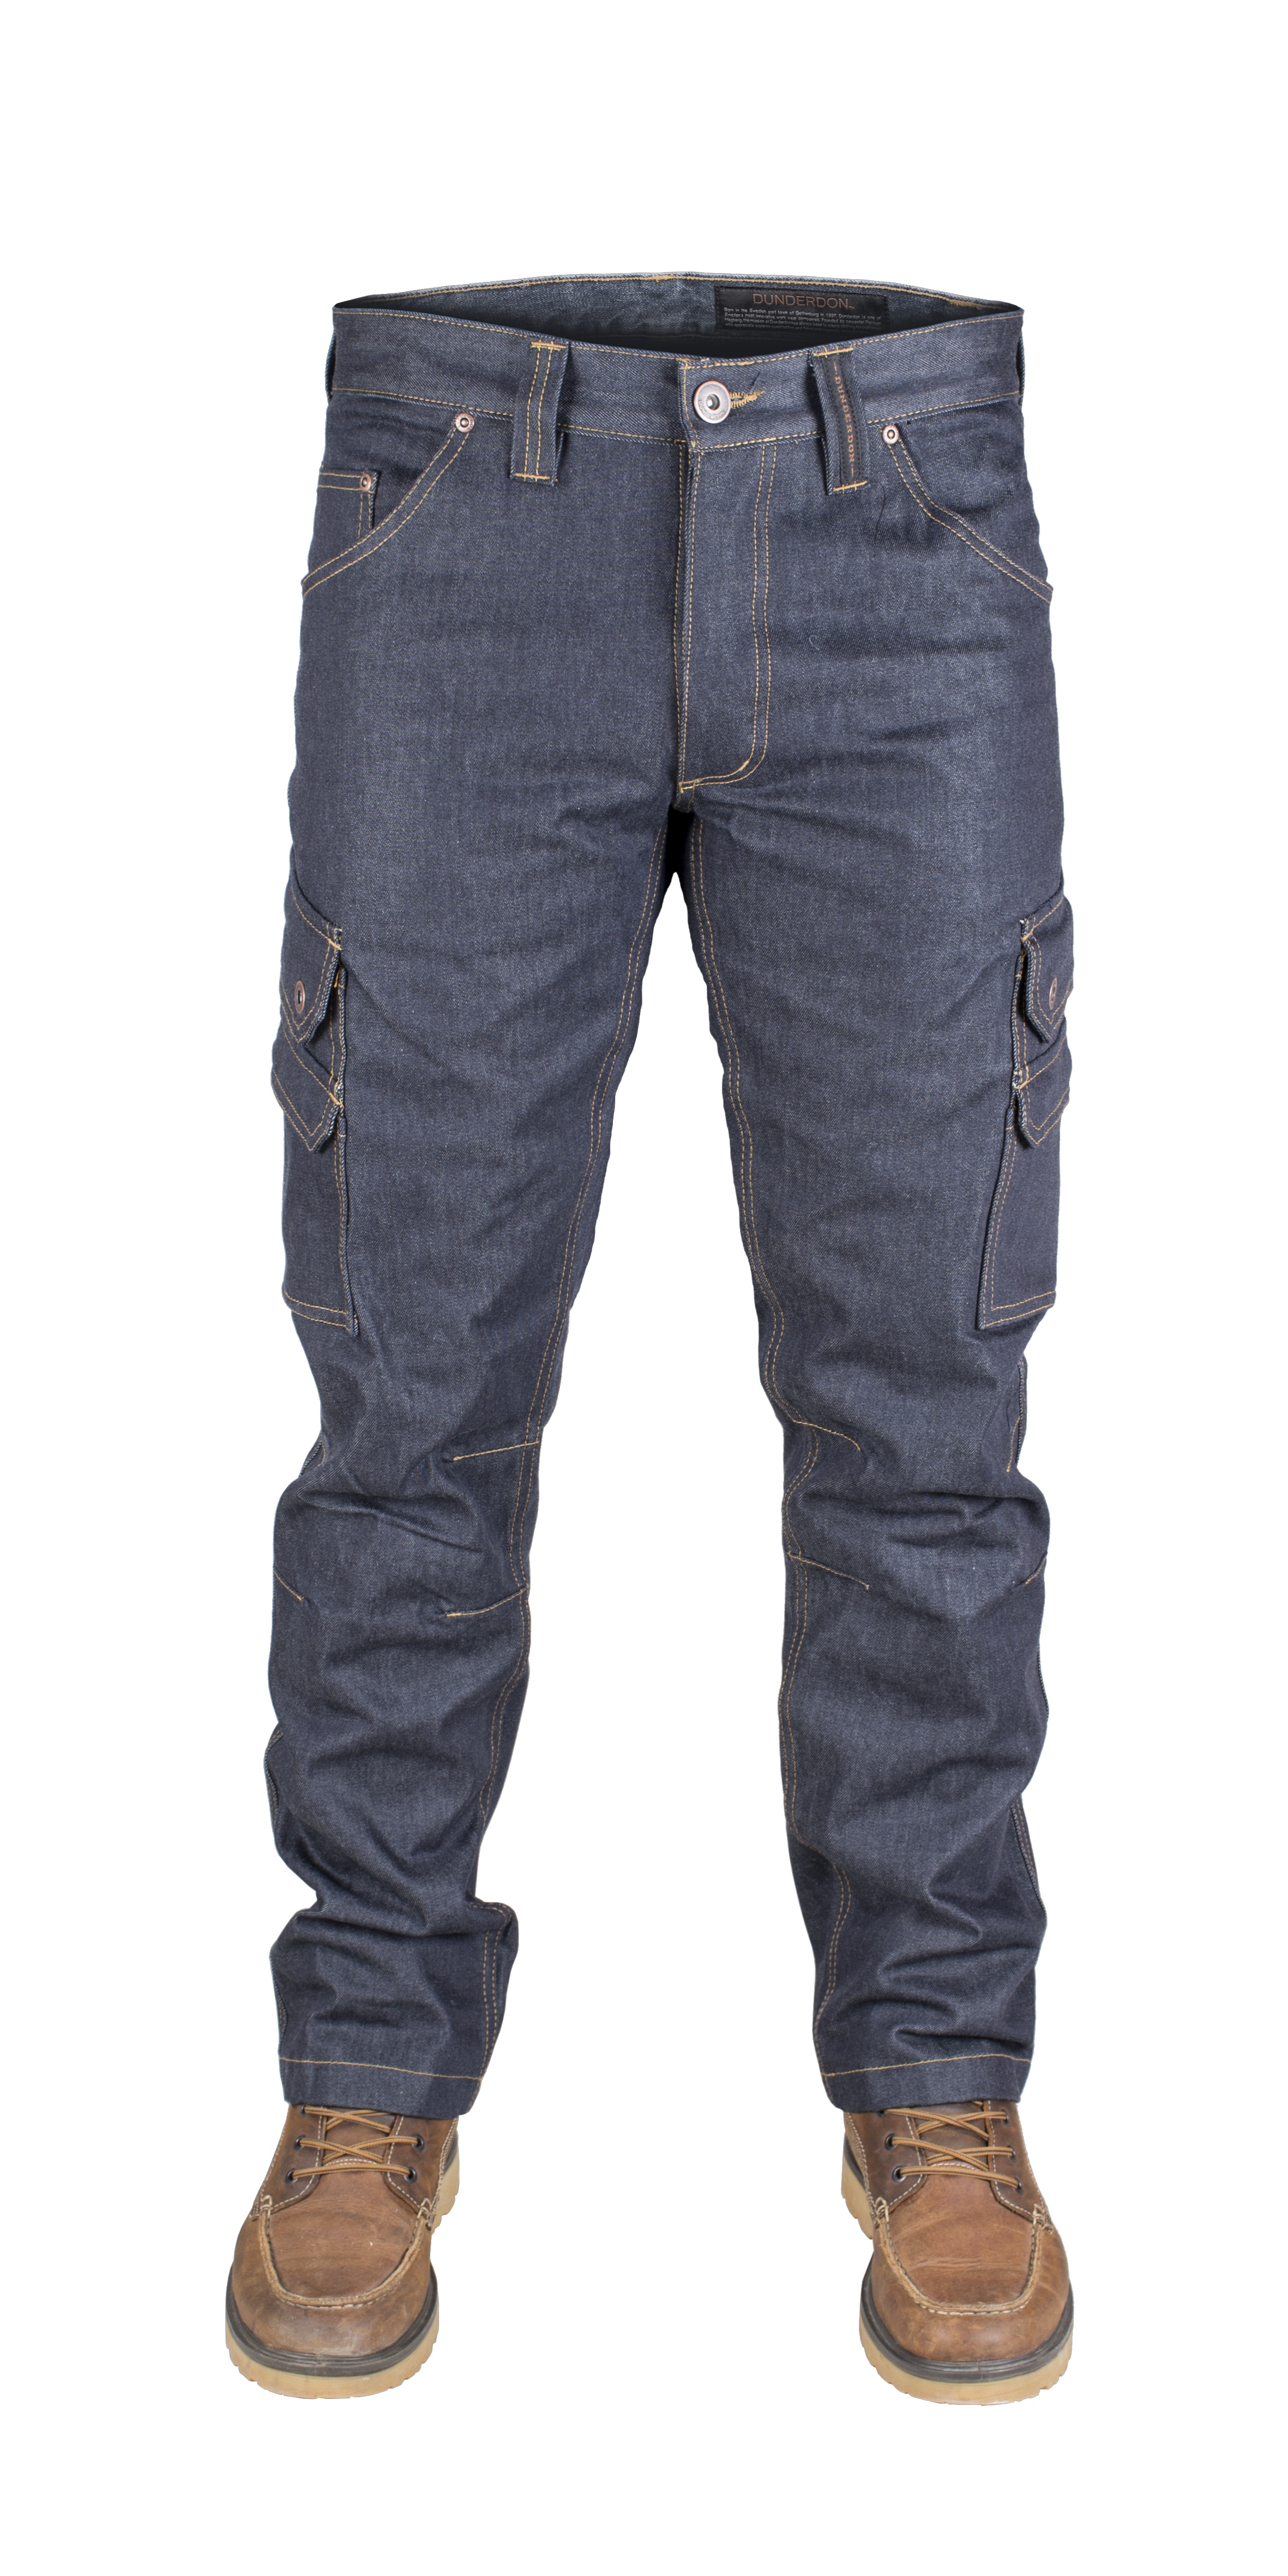 DW106027 Dunderdon Cordura Jeans P60 -AUSVERKAUF- (Noch verfügbare Menge, siehe Pulldown)